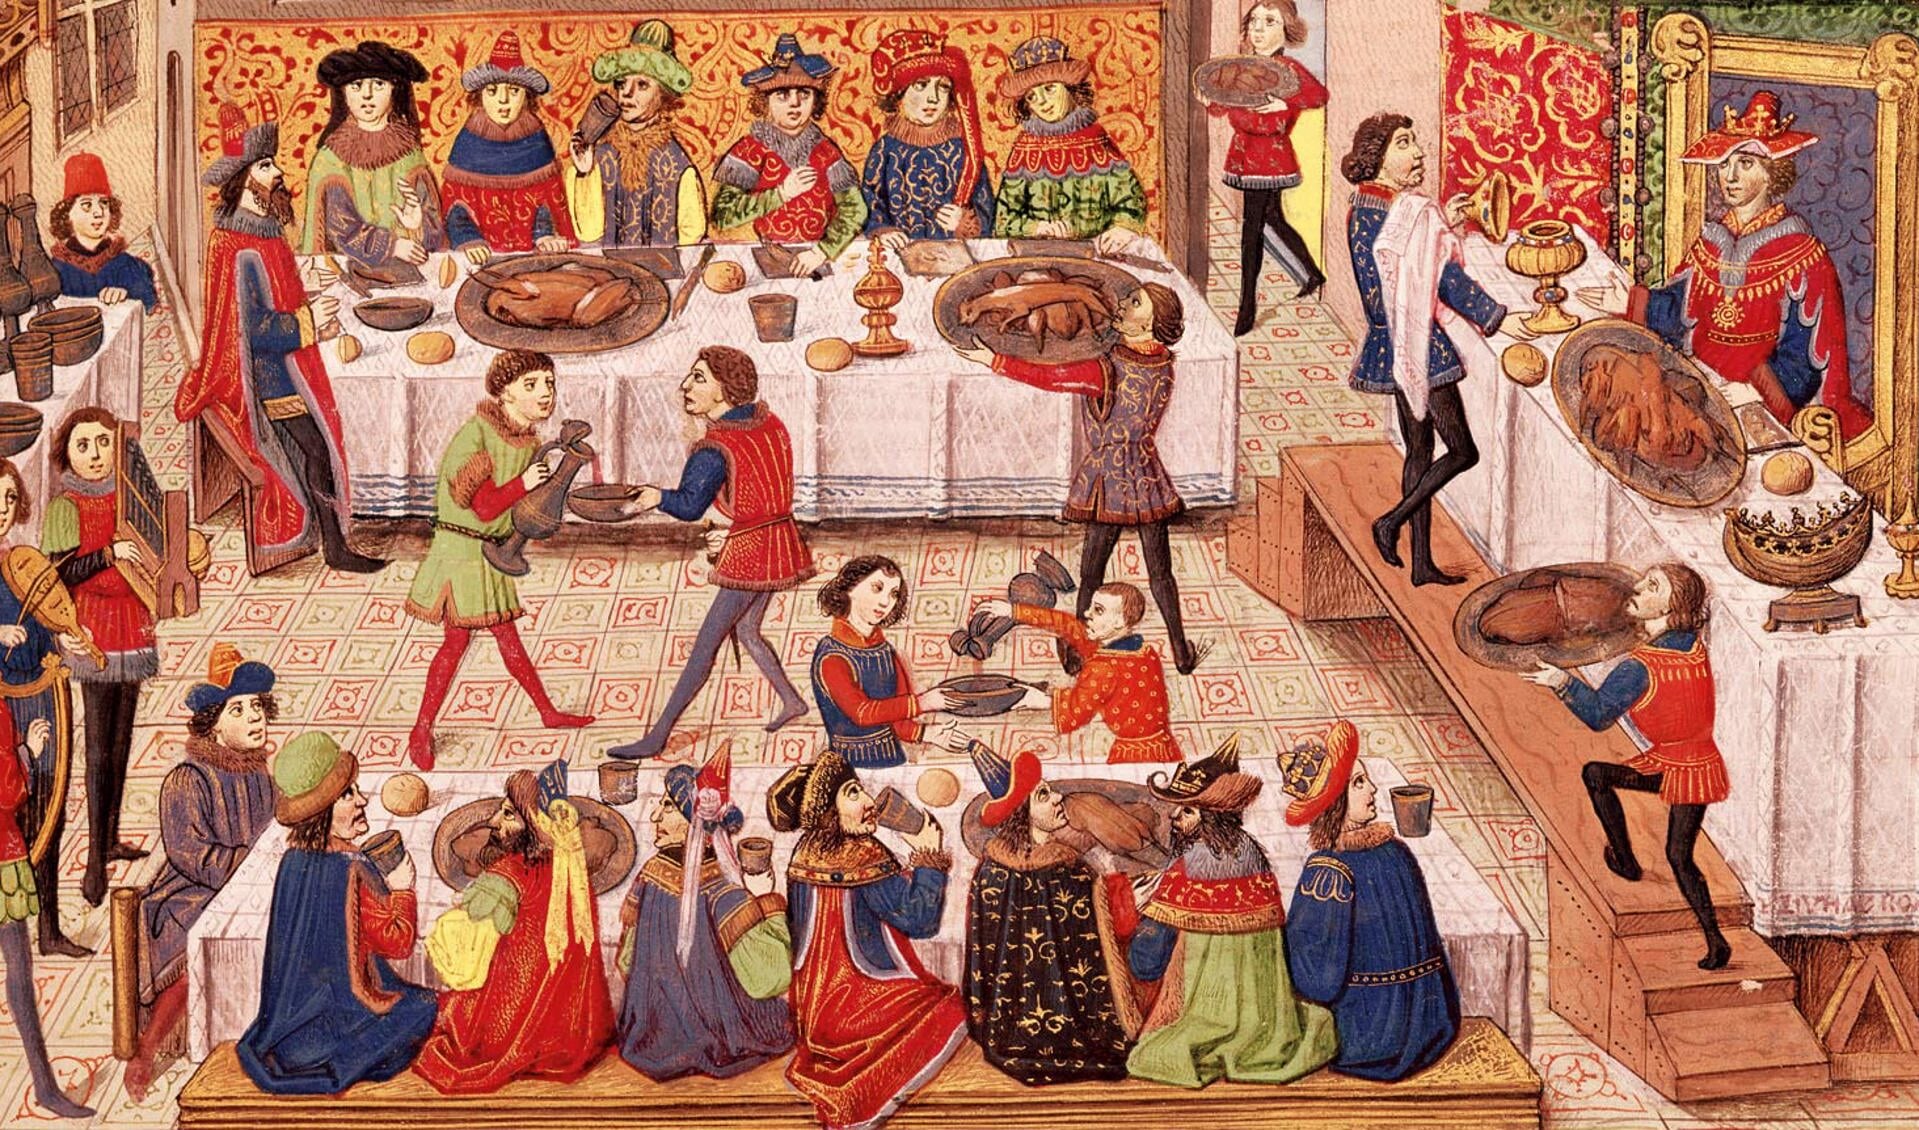 Dineren in de middeleeuwen was een bijzondere aangelegenheid. (Foto: Historianet.nl)